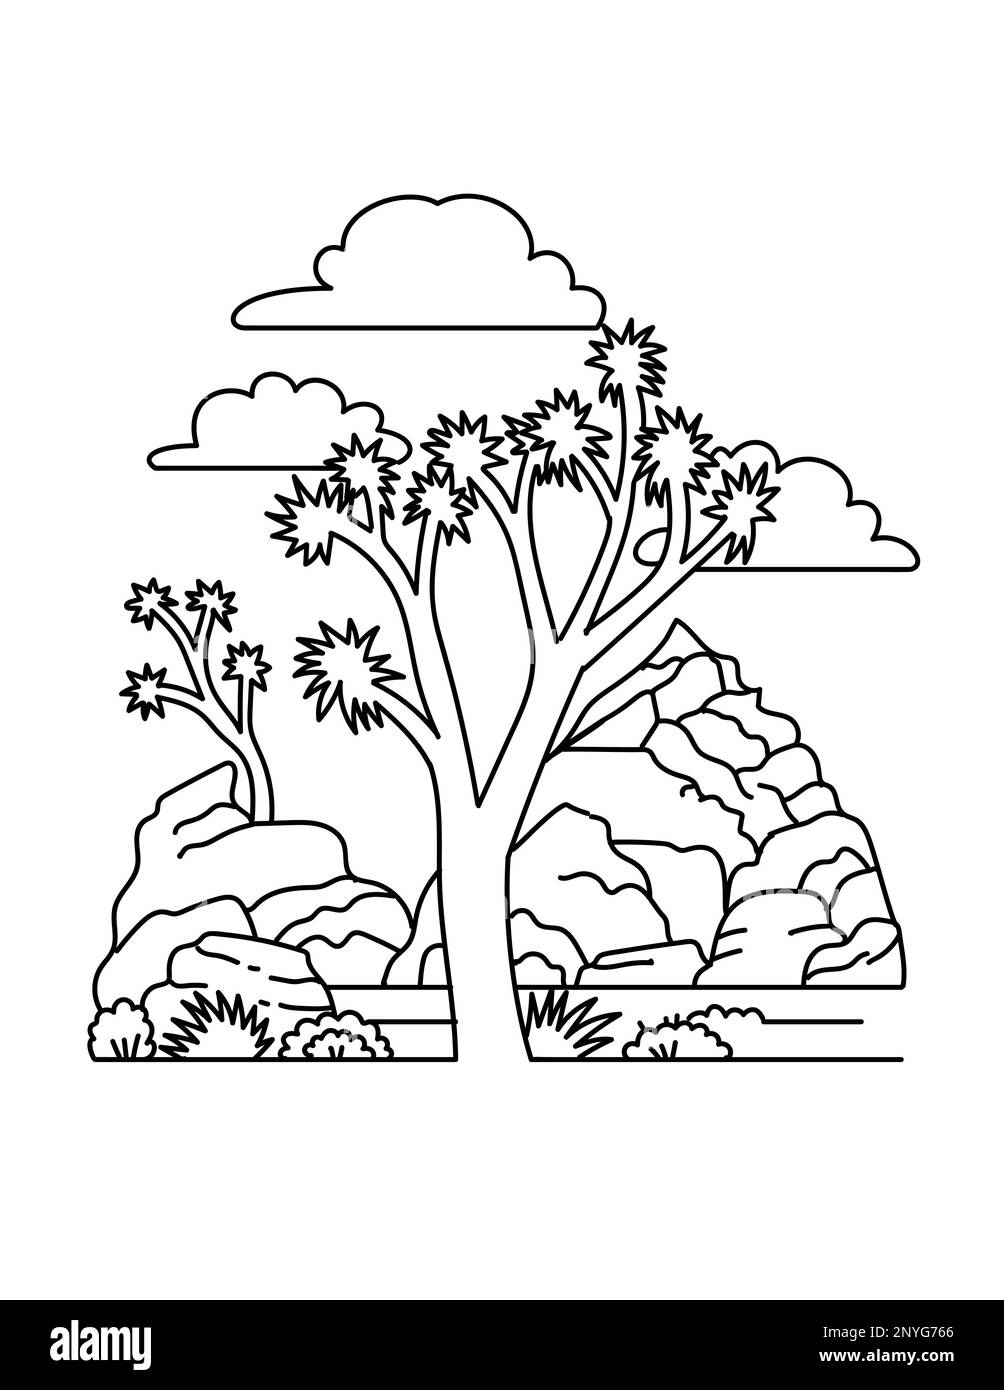 Illustrazione in monocromia del Joshua Tree National Park, situato nella California sudorientale in stile monocromia bianco e nero. Foto Stock